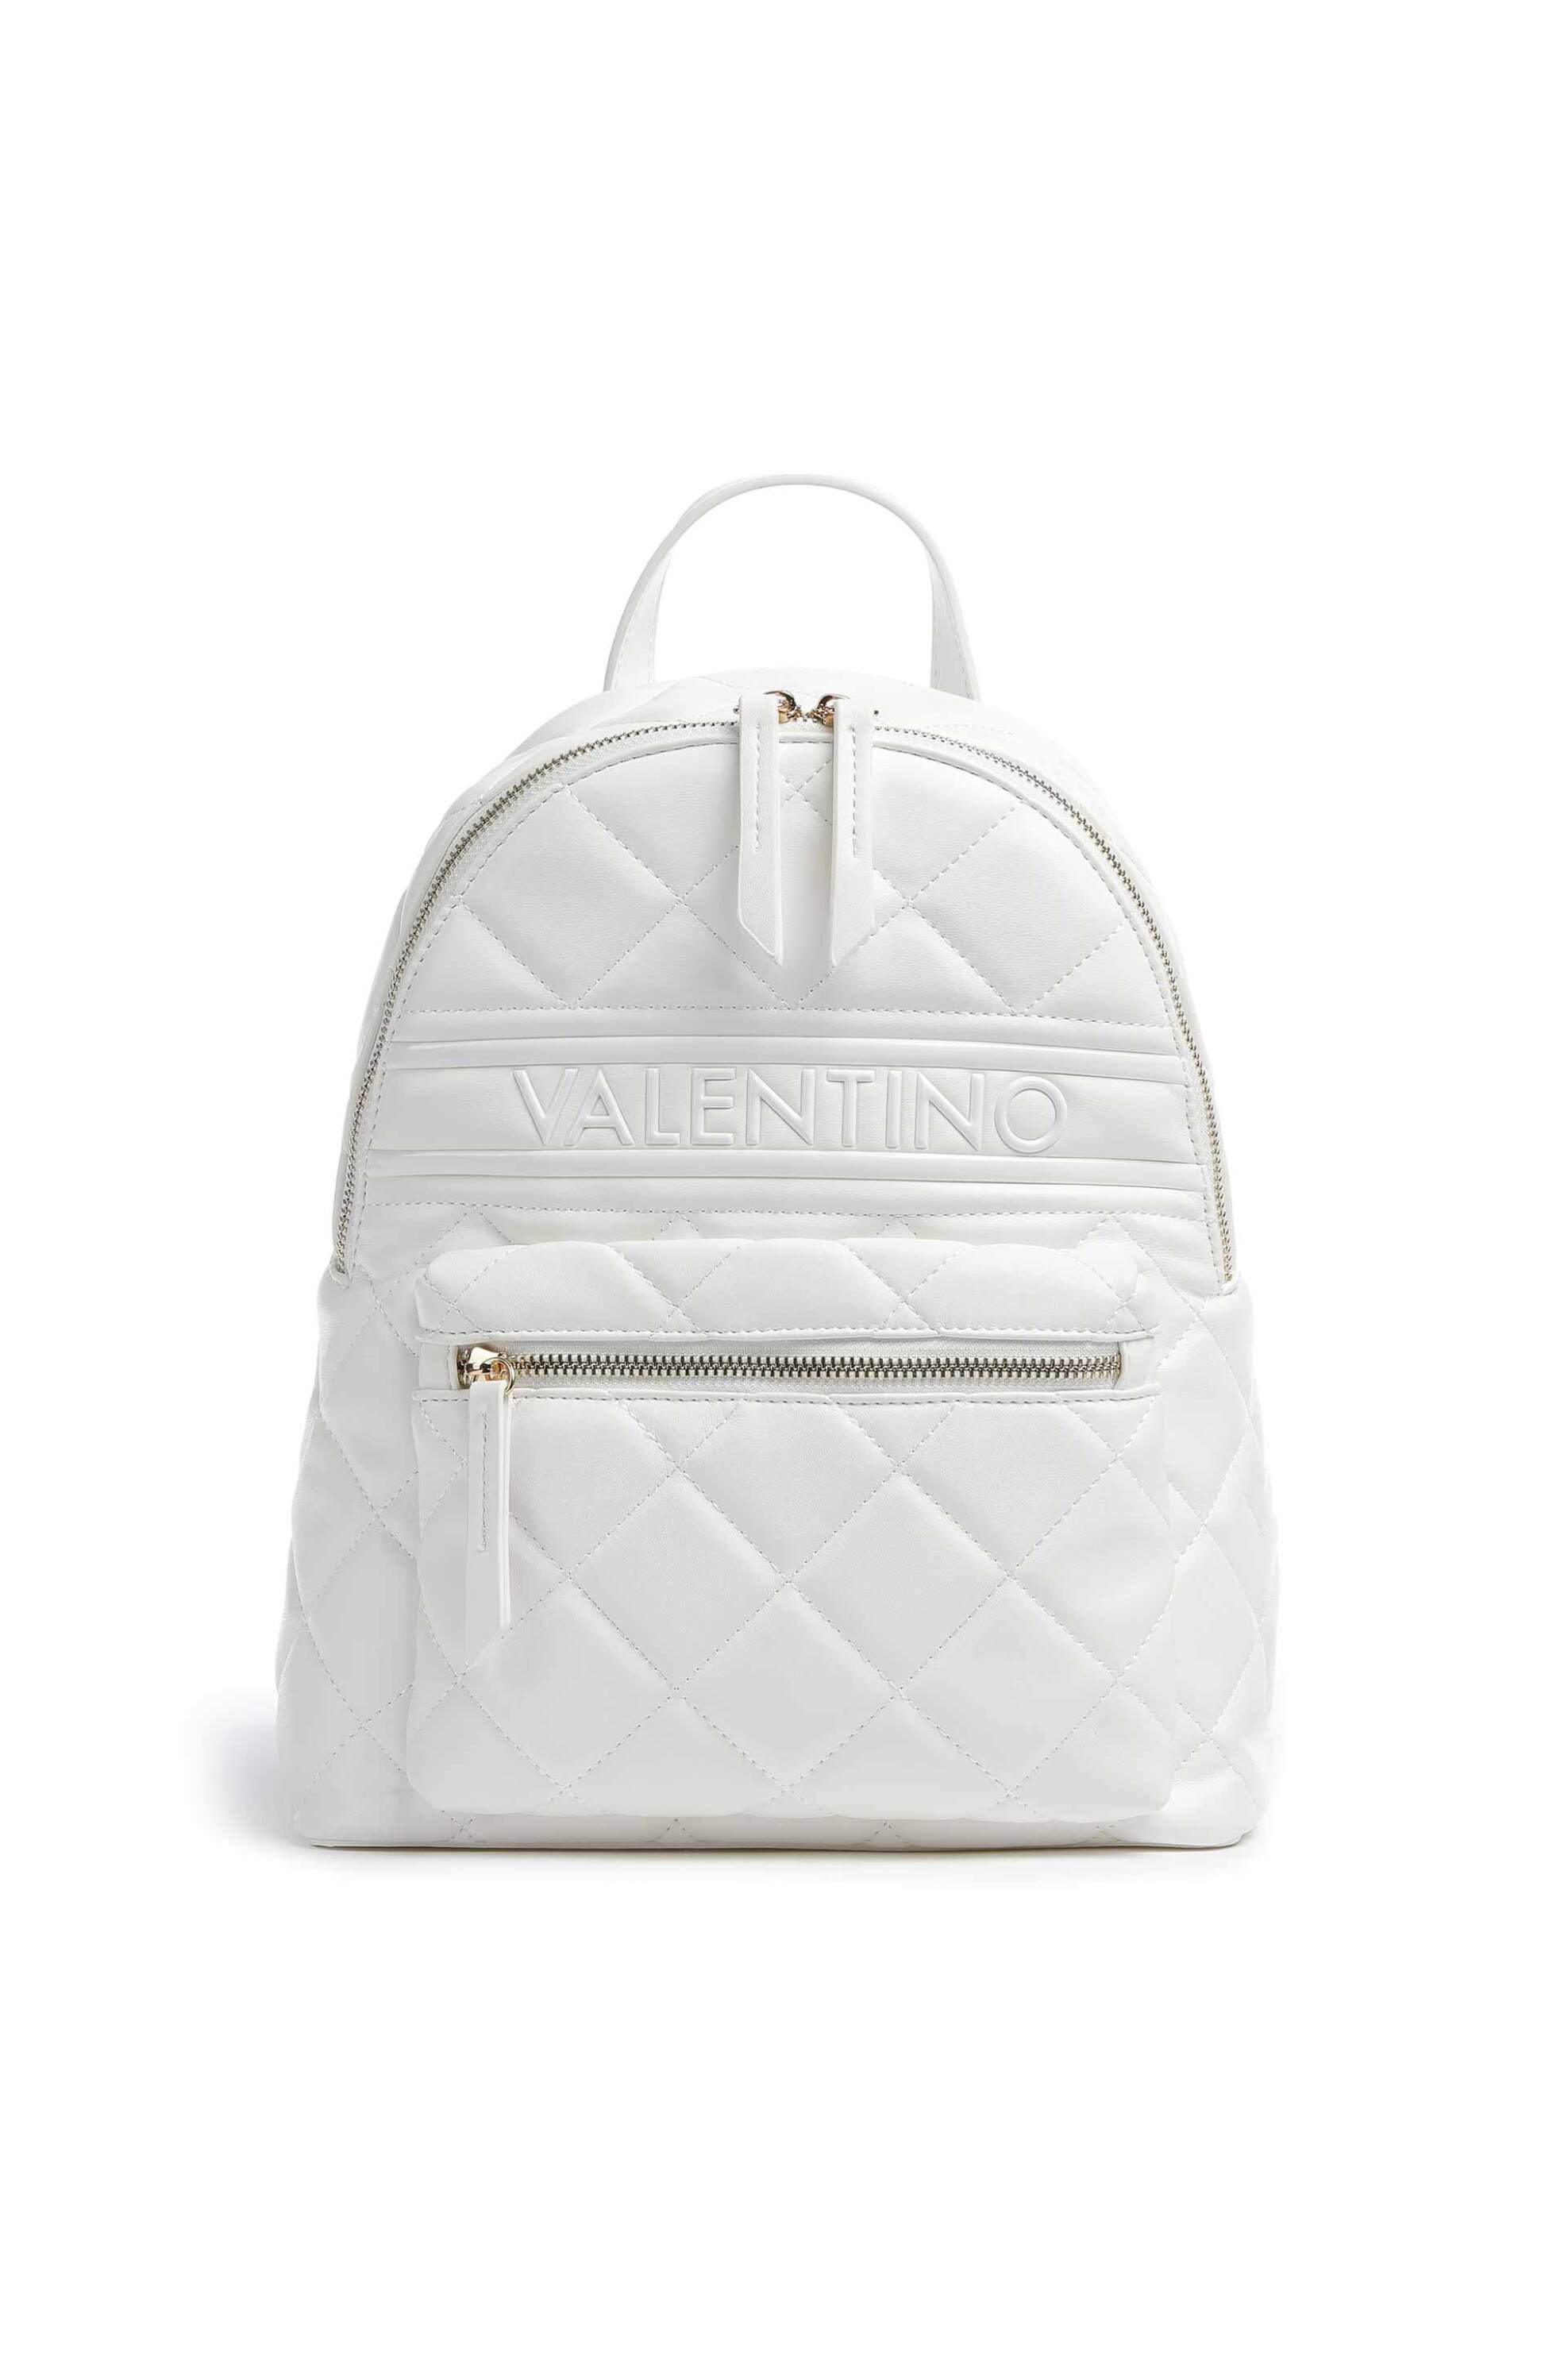 Γυναίκα > ΤΣΑΝΤΕΣ > Σακίδια & Backpacks Valentino γυναικείο backpack μονόχρωμο με all-over καπιτονέ σχέδιο "Ada" - 55KVBS51O07/ADA Λευκό